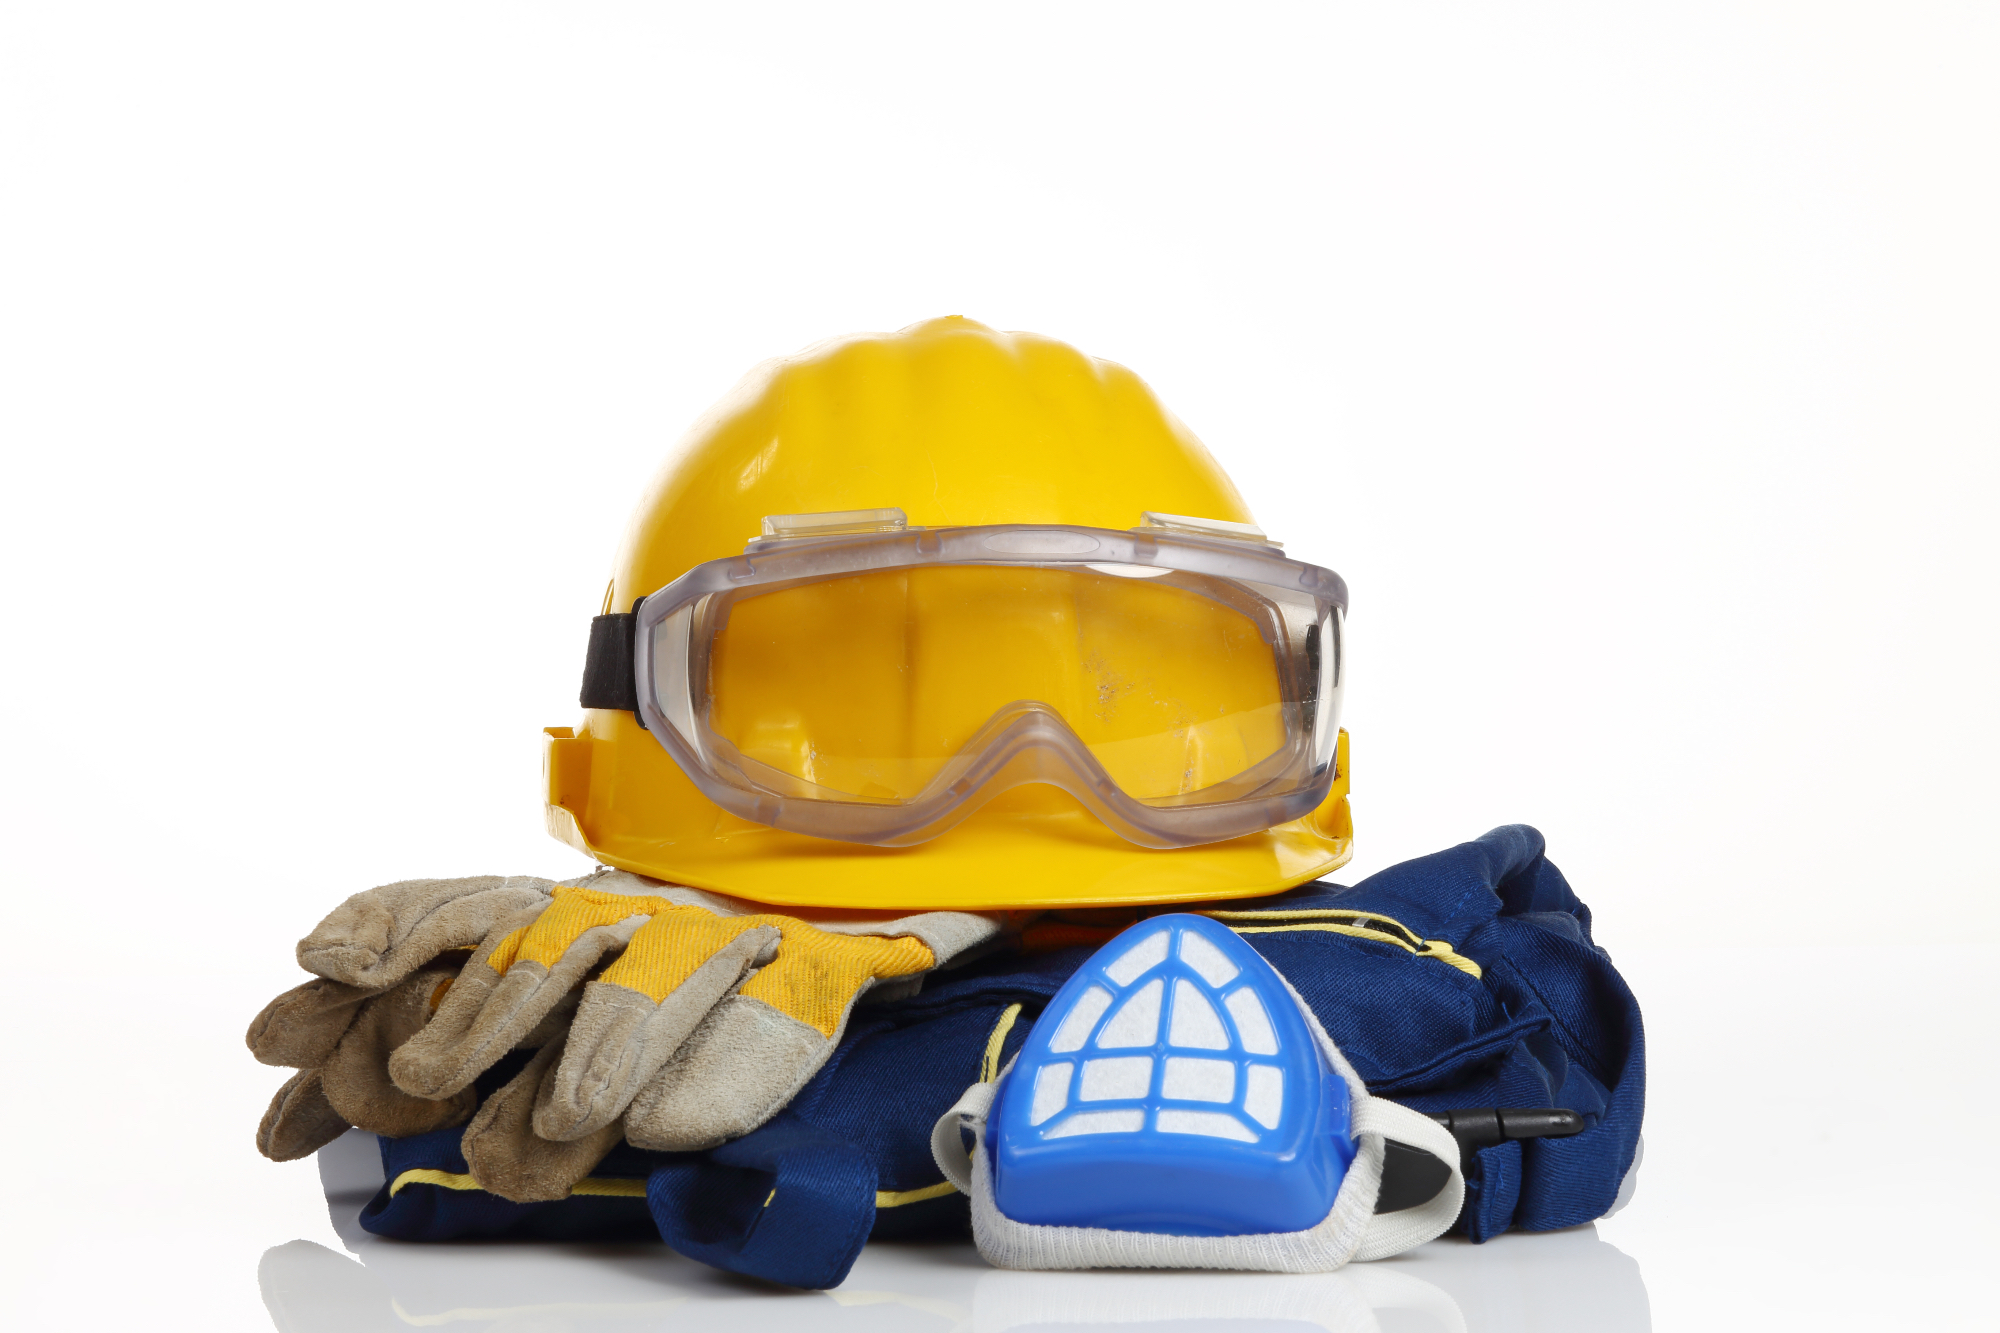 Zaščitna oblačila za zahtevnejša delovna okolja in za vsakodnevno uporabo